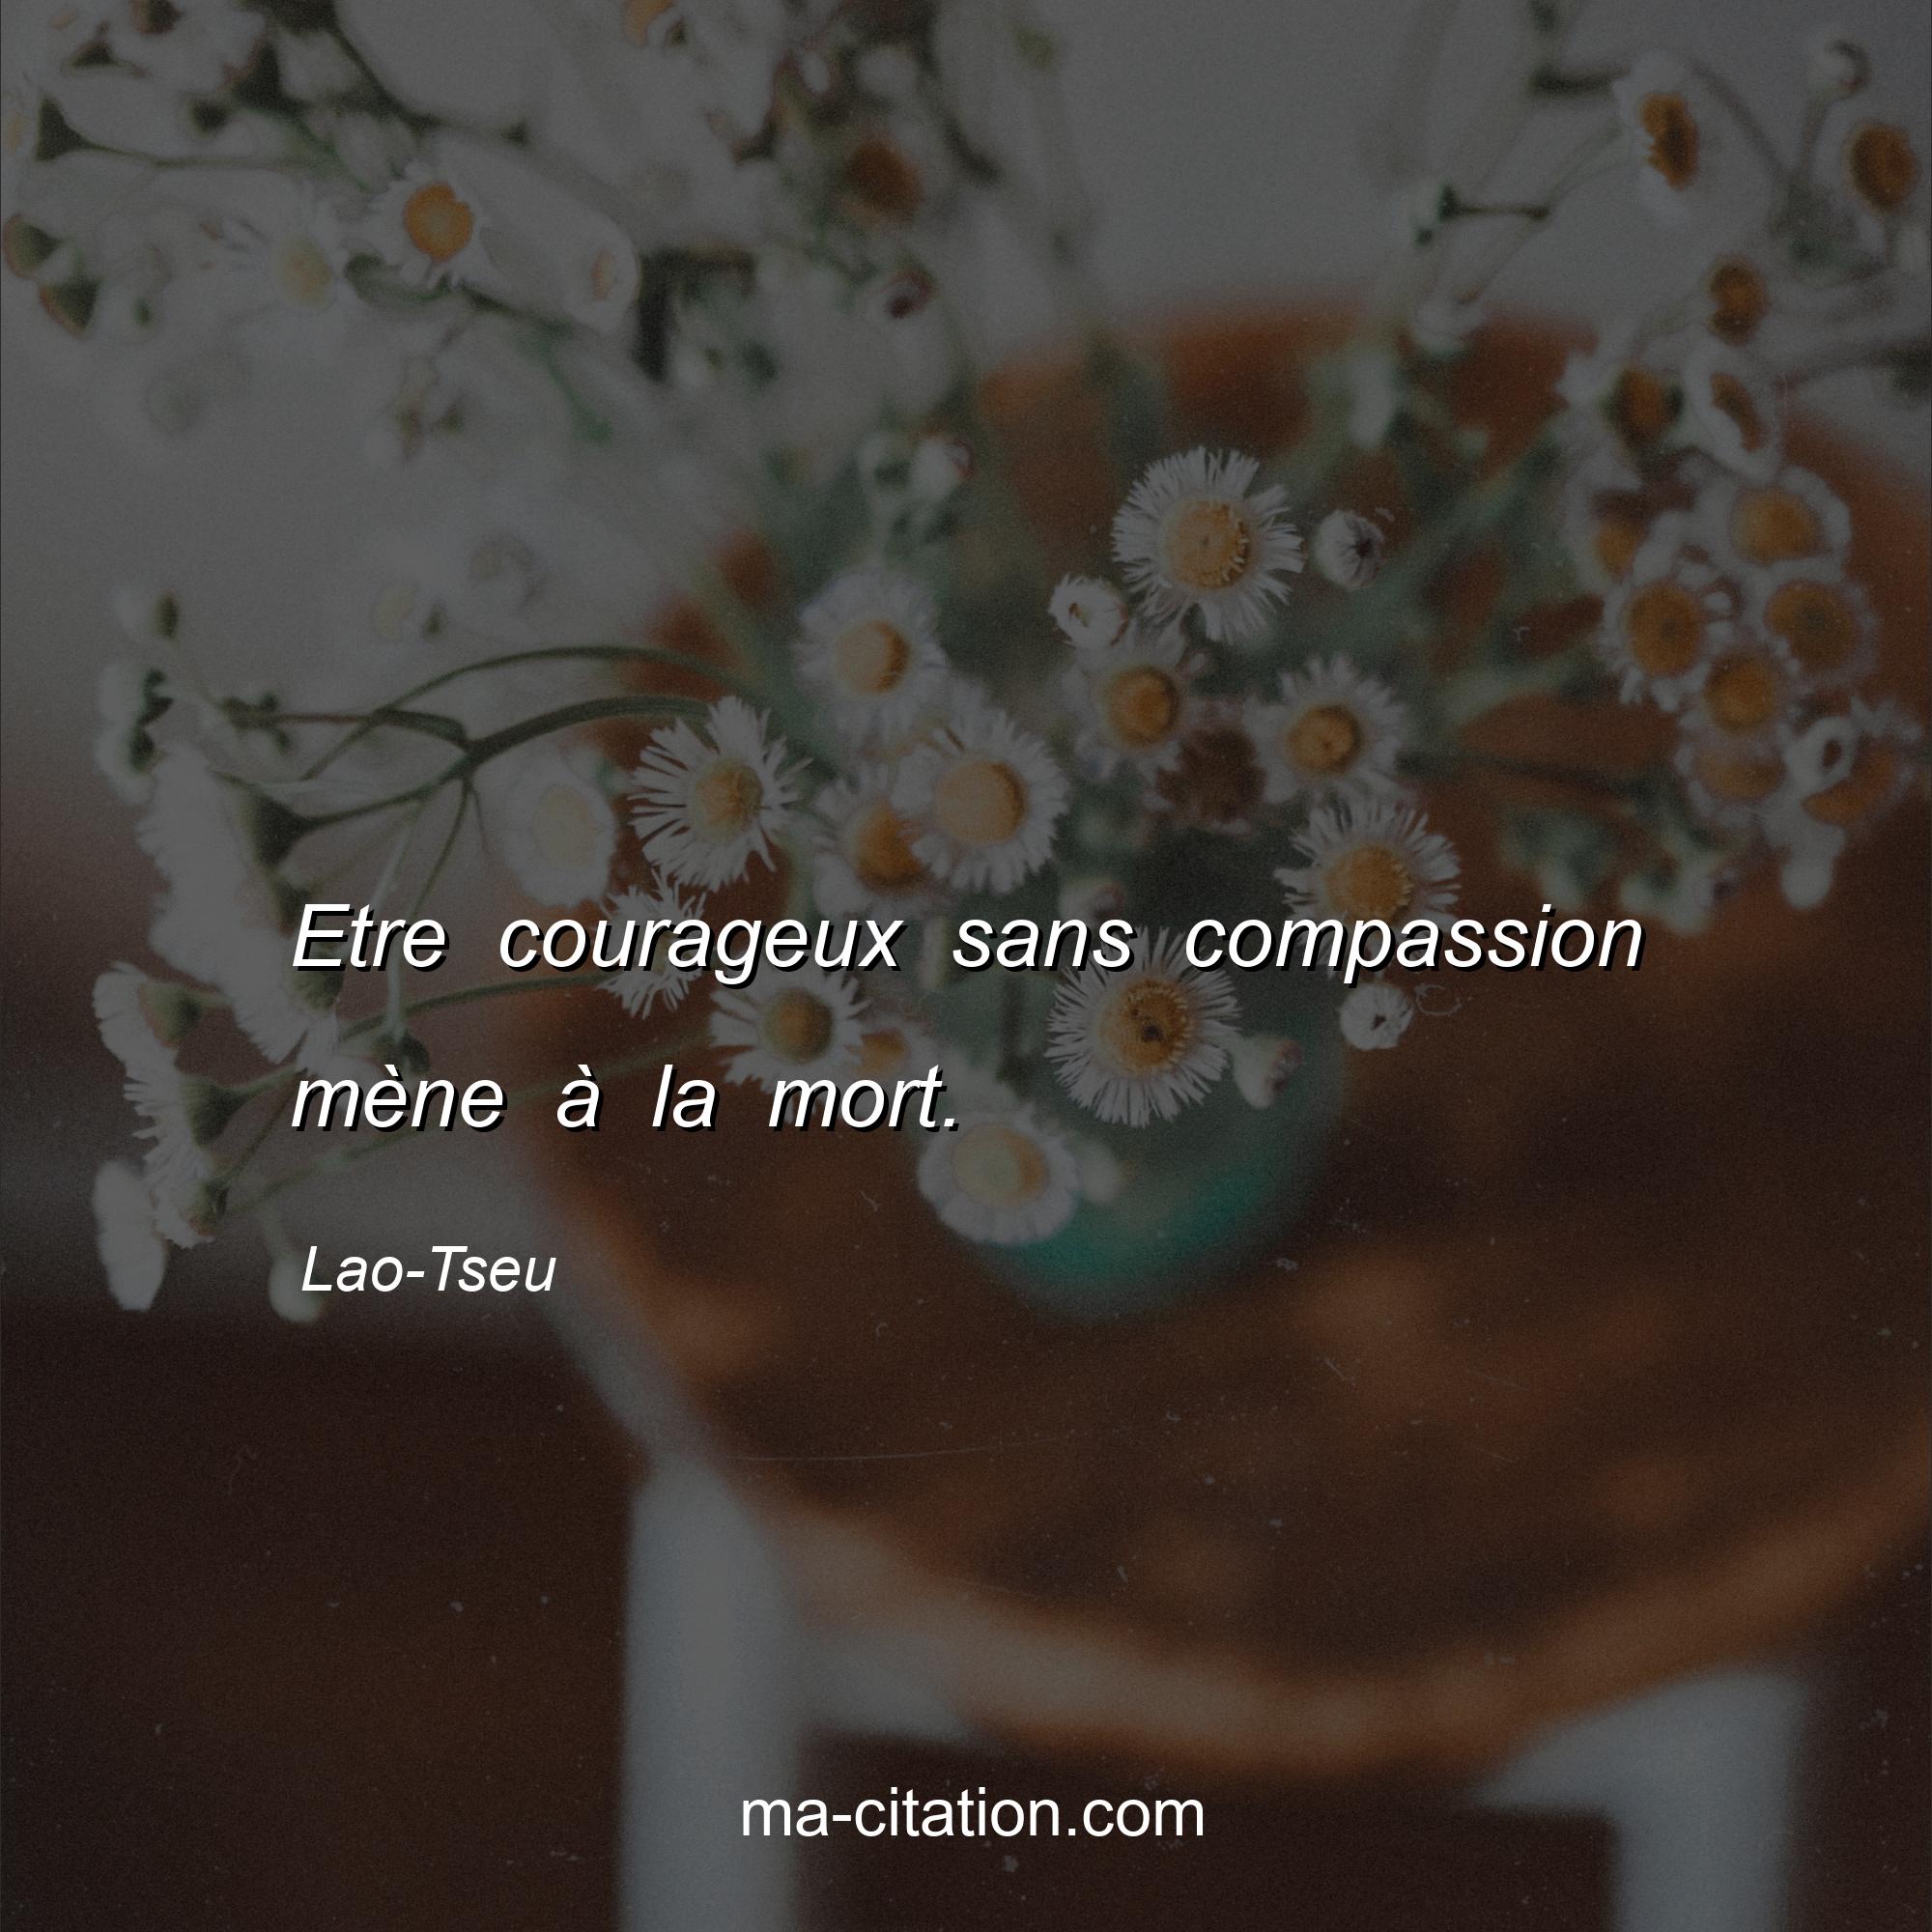 Lao-Tseu : Etre courageux sans compassion mène à la mort.